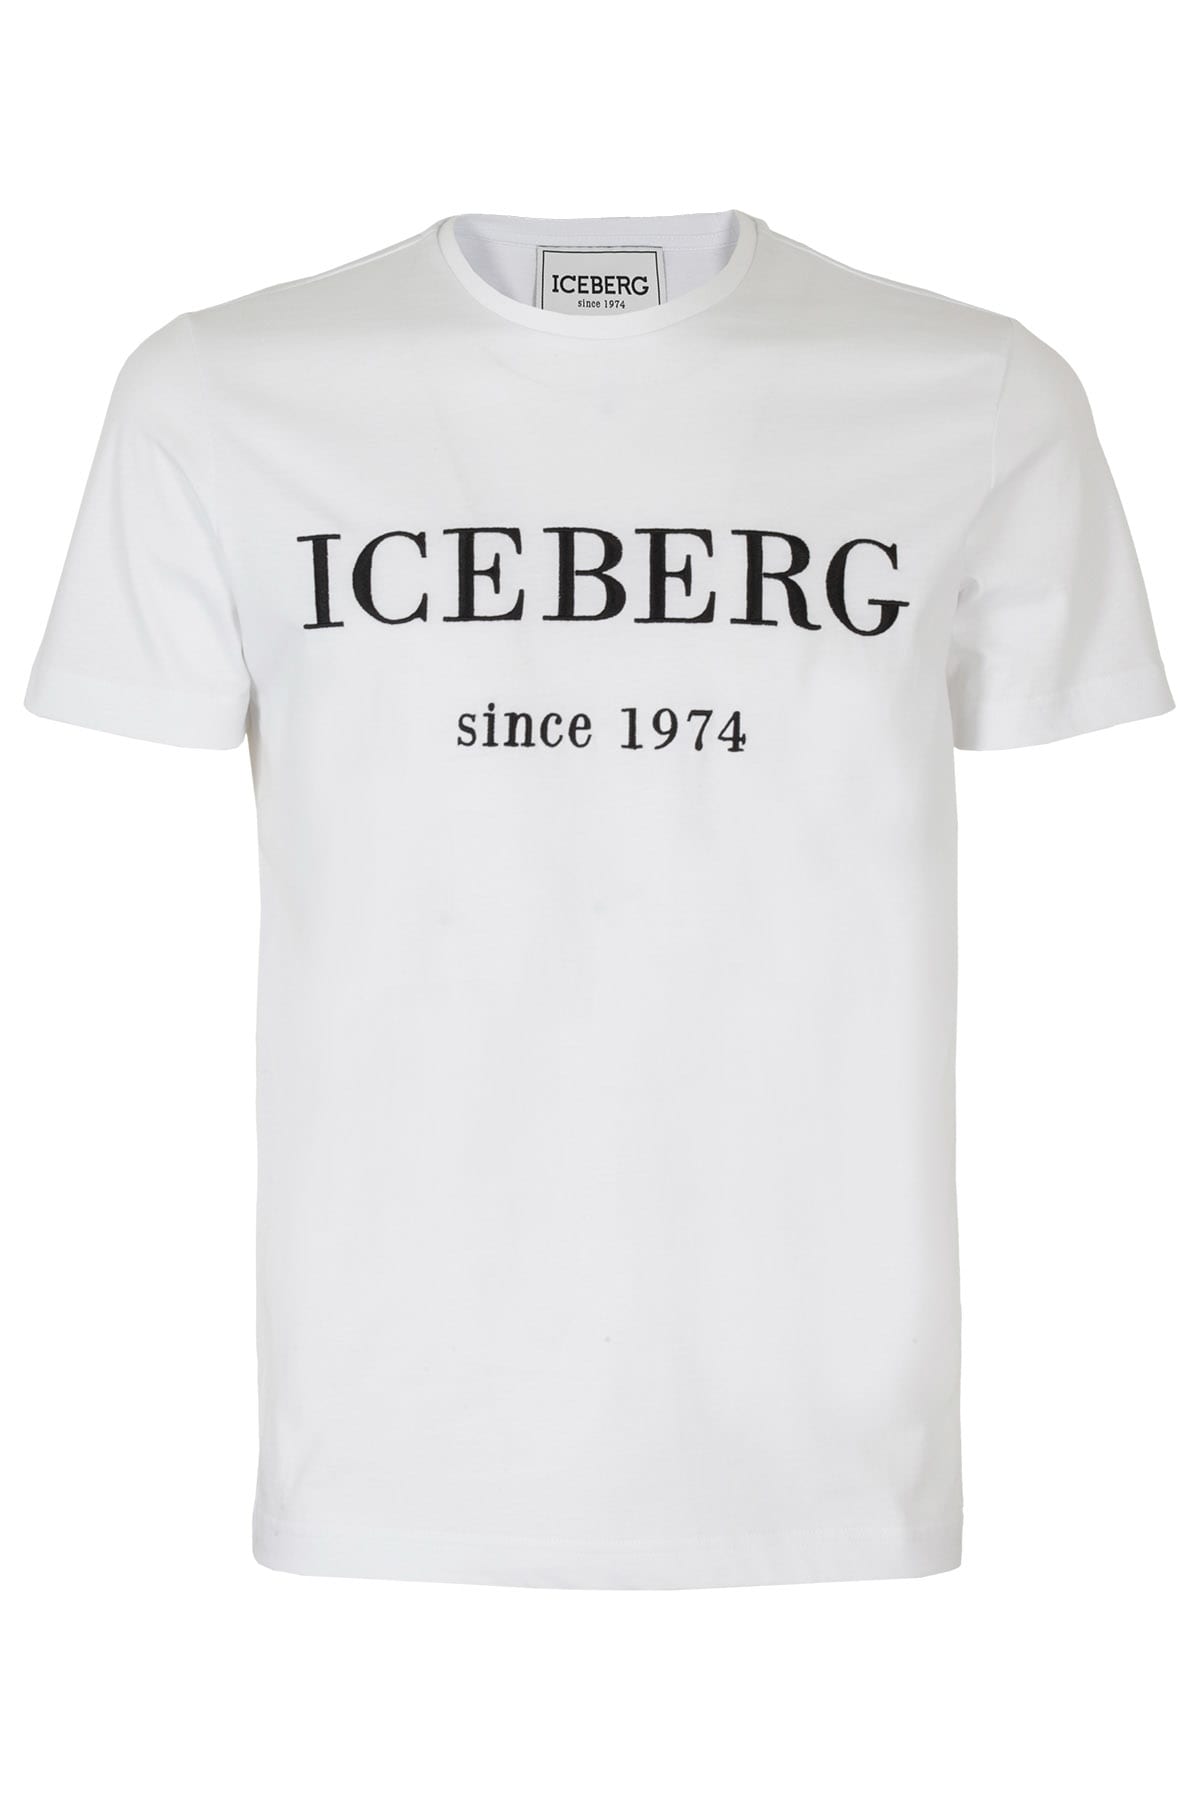 ICEBERG T-SHIRT